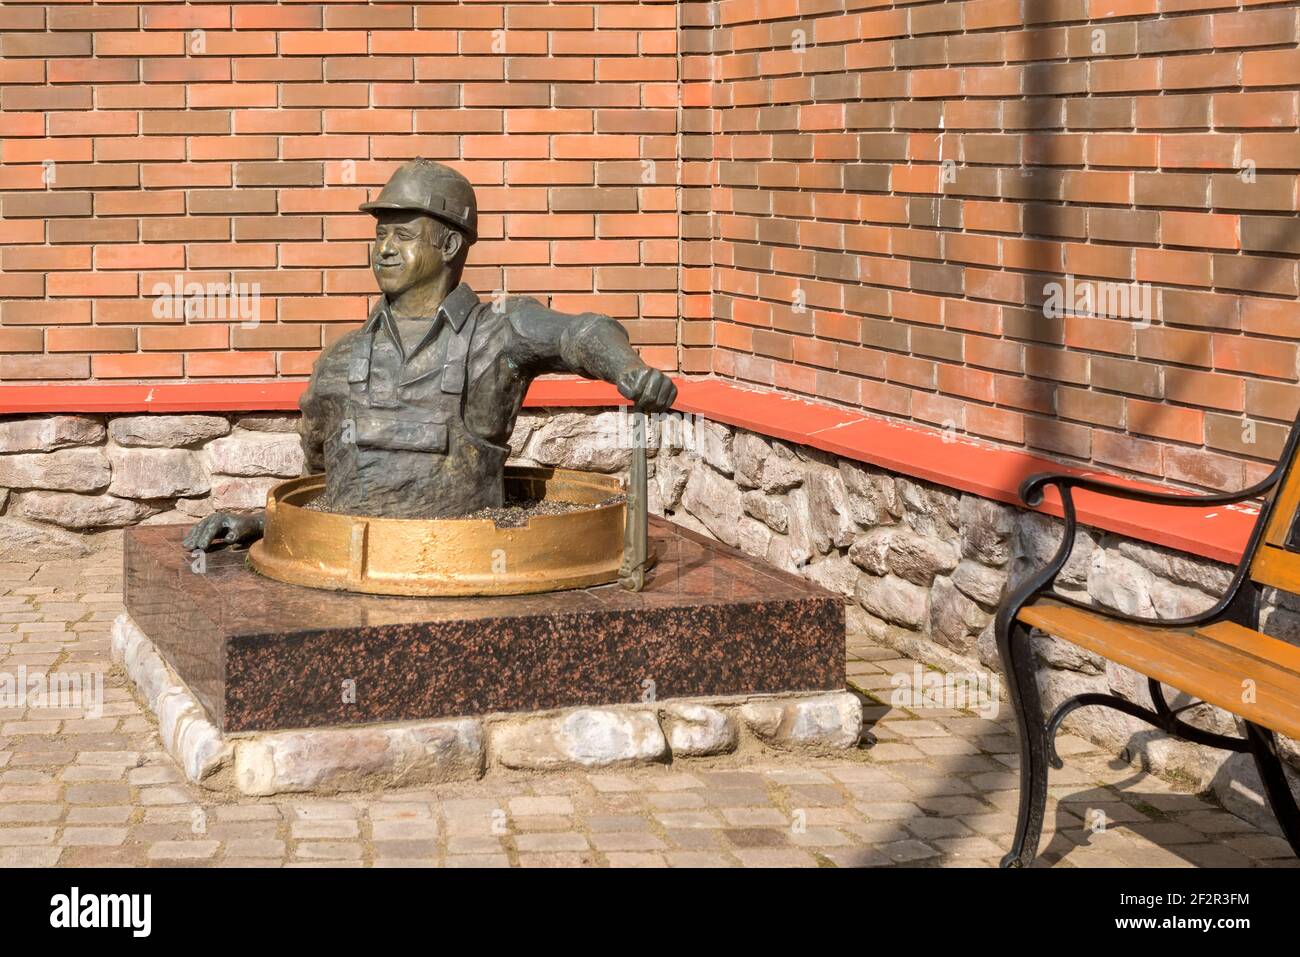 RYBINSK, RUSSIE / AOÛT 15,2020 : statue de plombier dans la ville de Rybinsk, région de Yaroslavl, Russie. Profession utile et professionnalisme dans le logement et c Banque D'Images